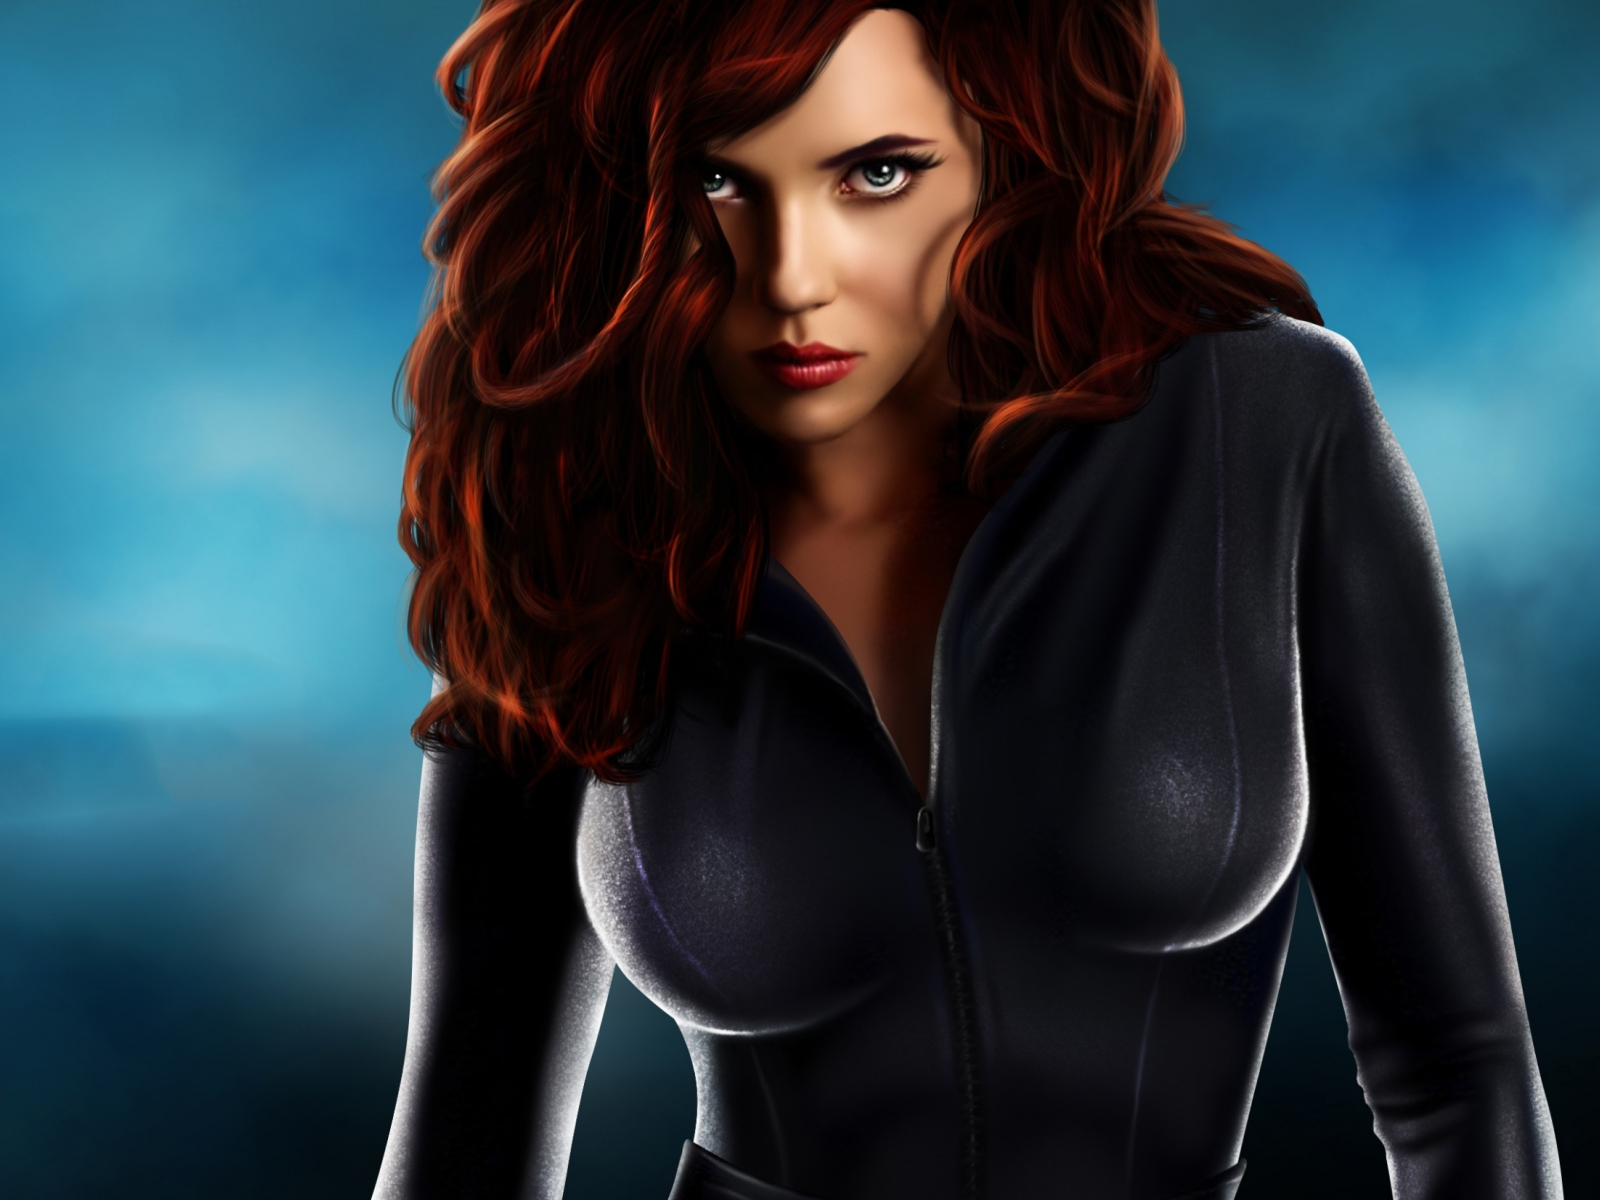 Black Widow, hot avenger, art, 1600x1200 wallpaper.